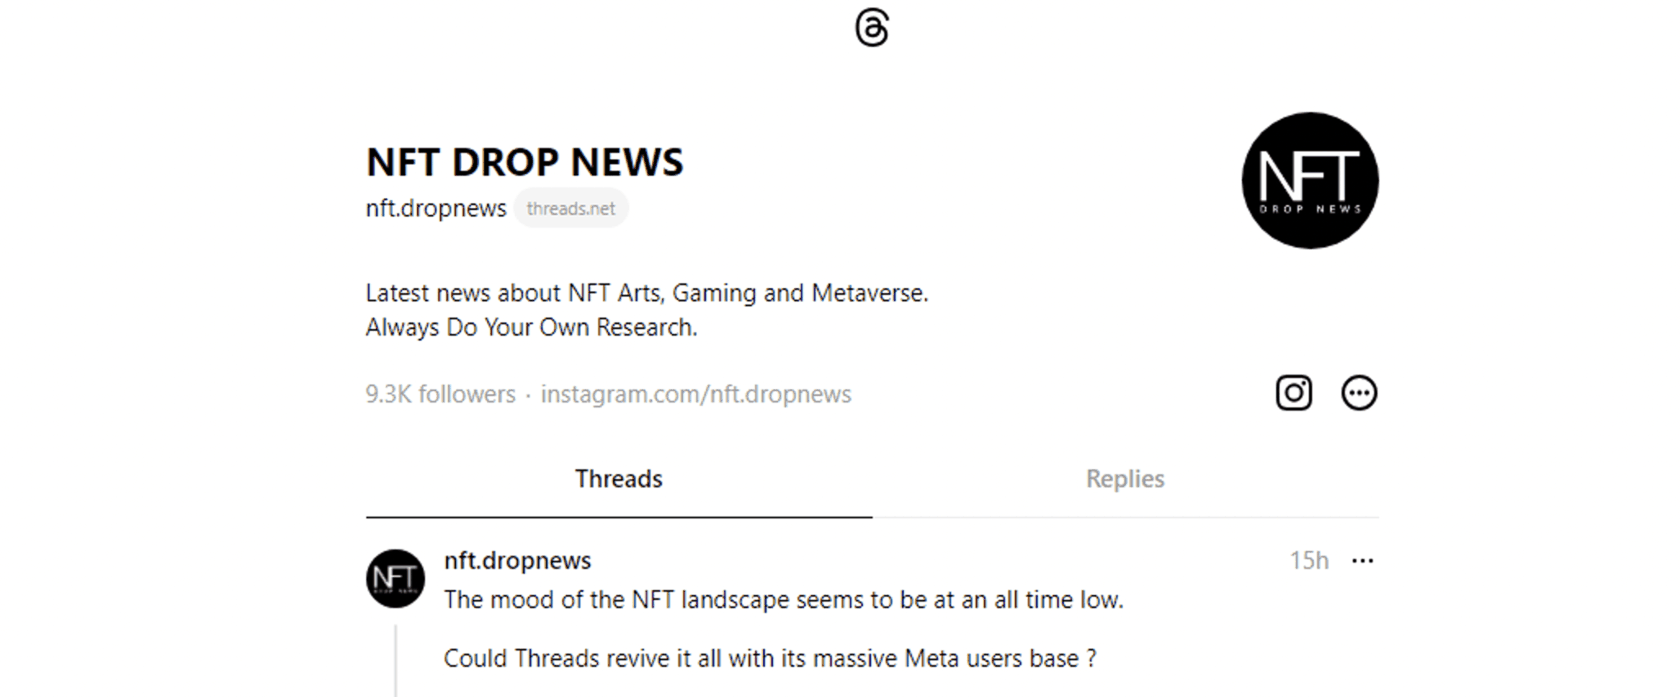 NFT DROP NEWS